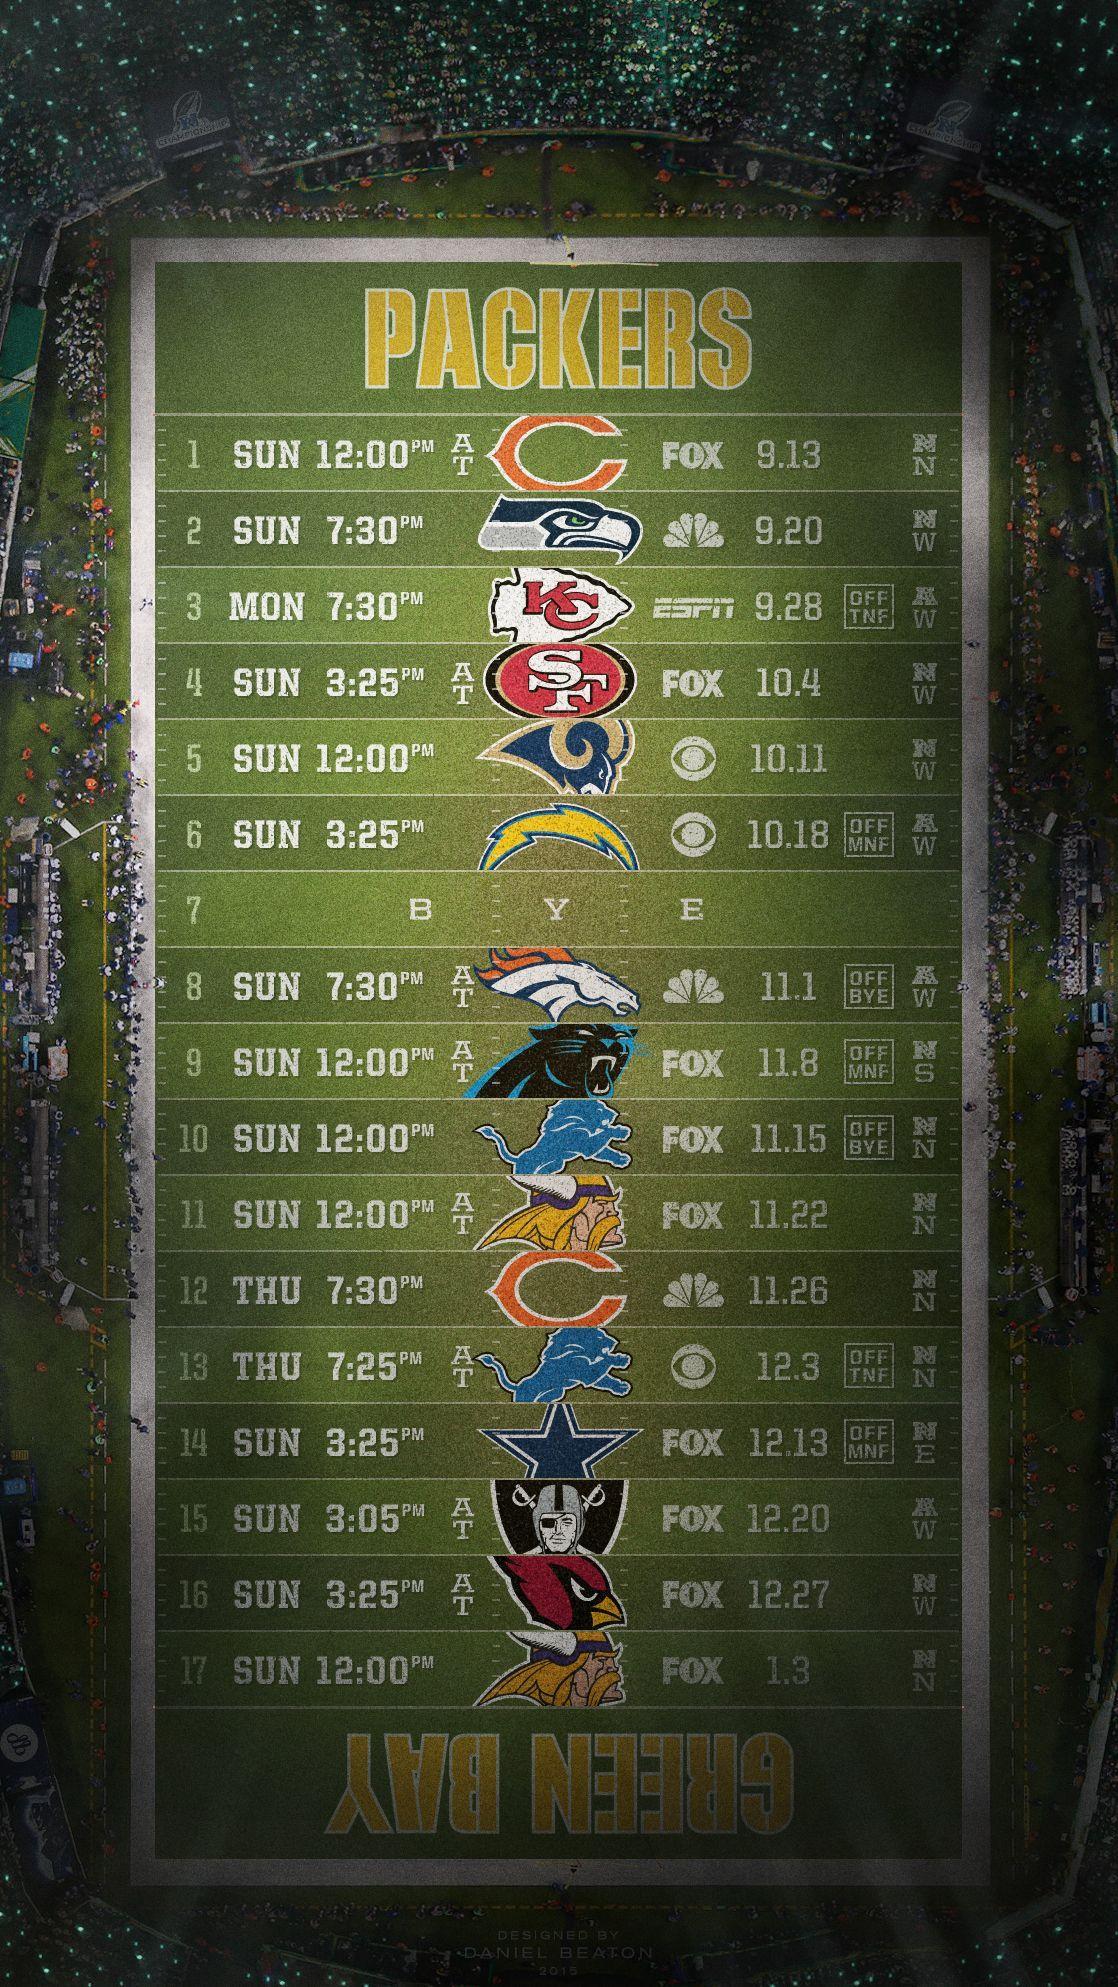 NFL Schedule Wallpaper - @NFLRT